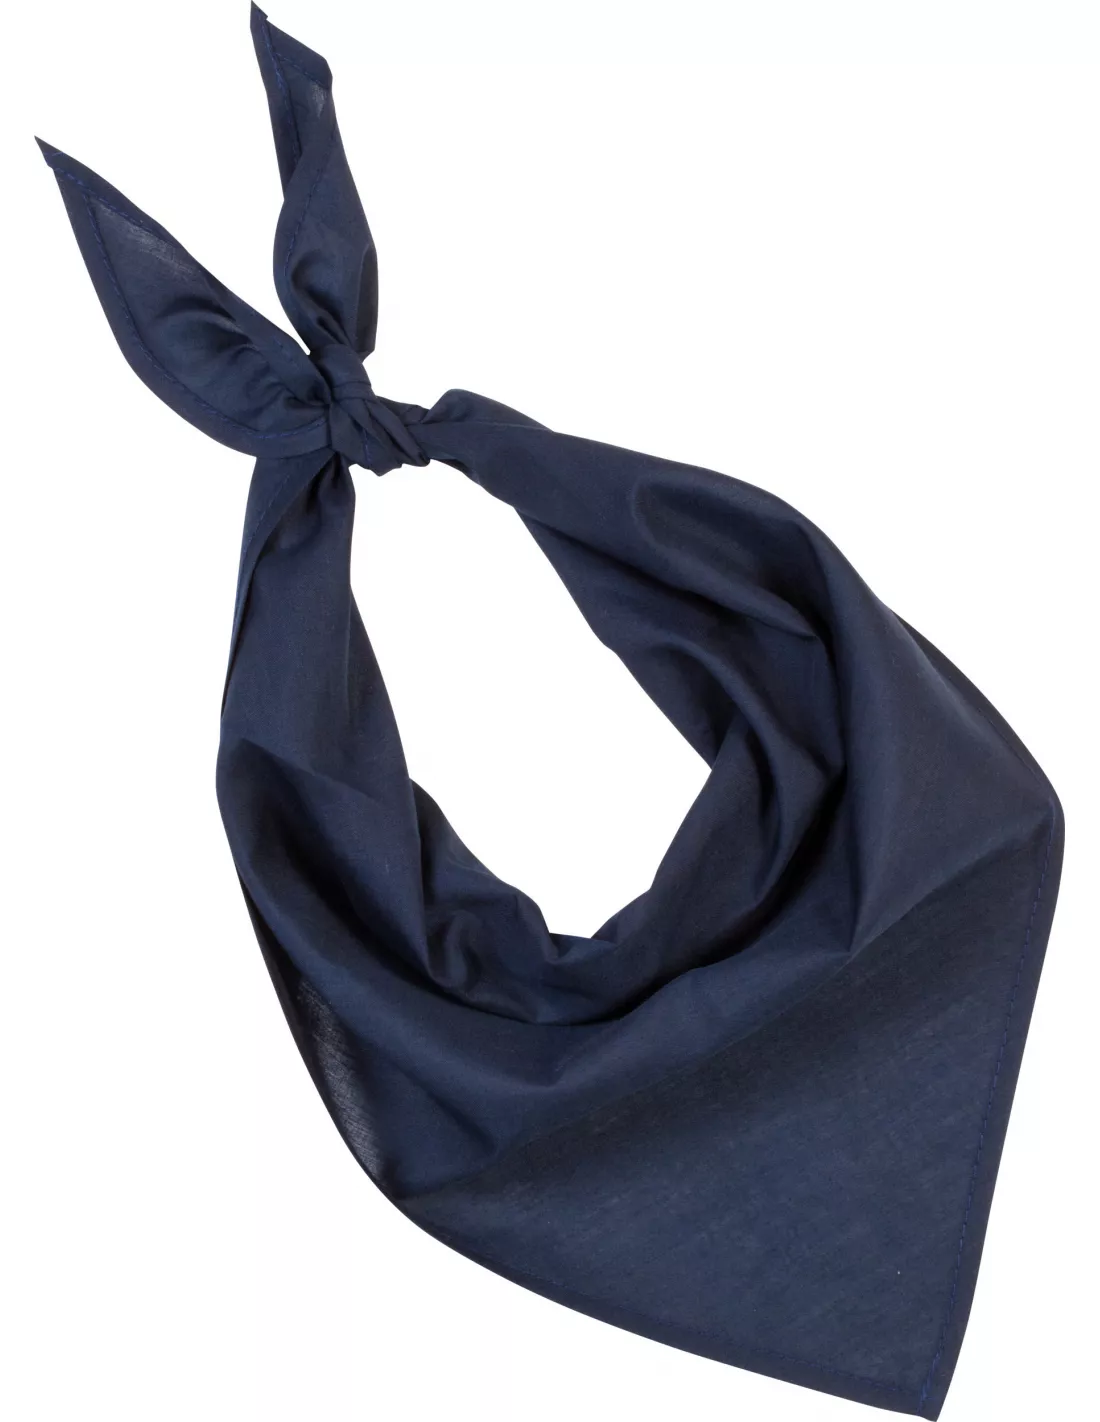 Pañuelo de cuello personalizado azul marino para imprimir con tu logp